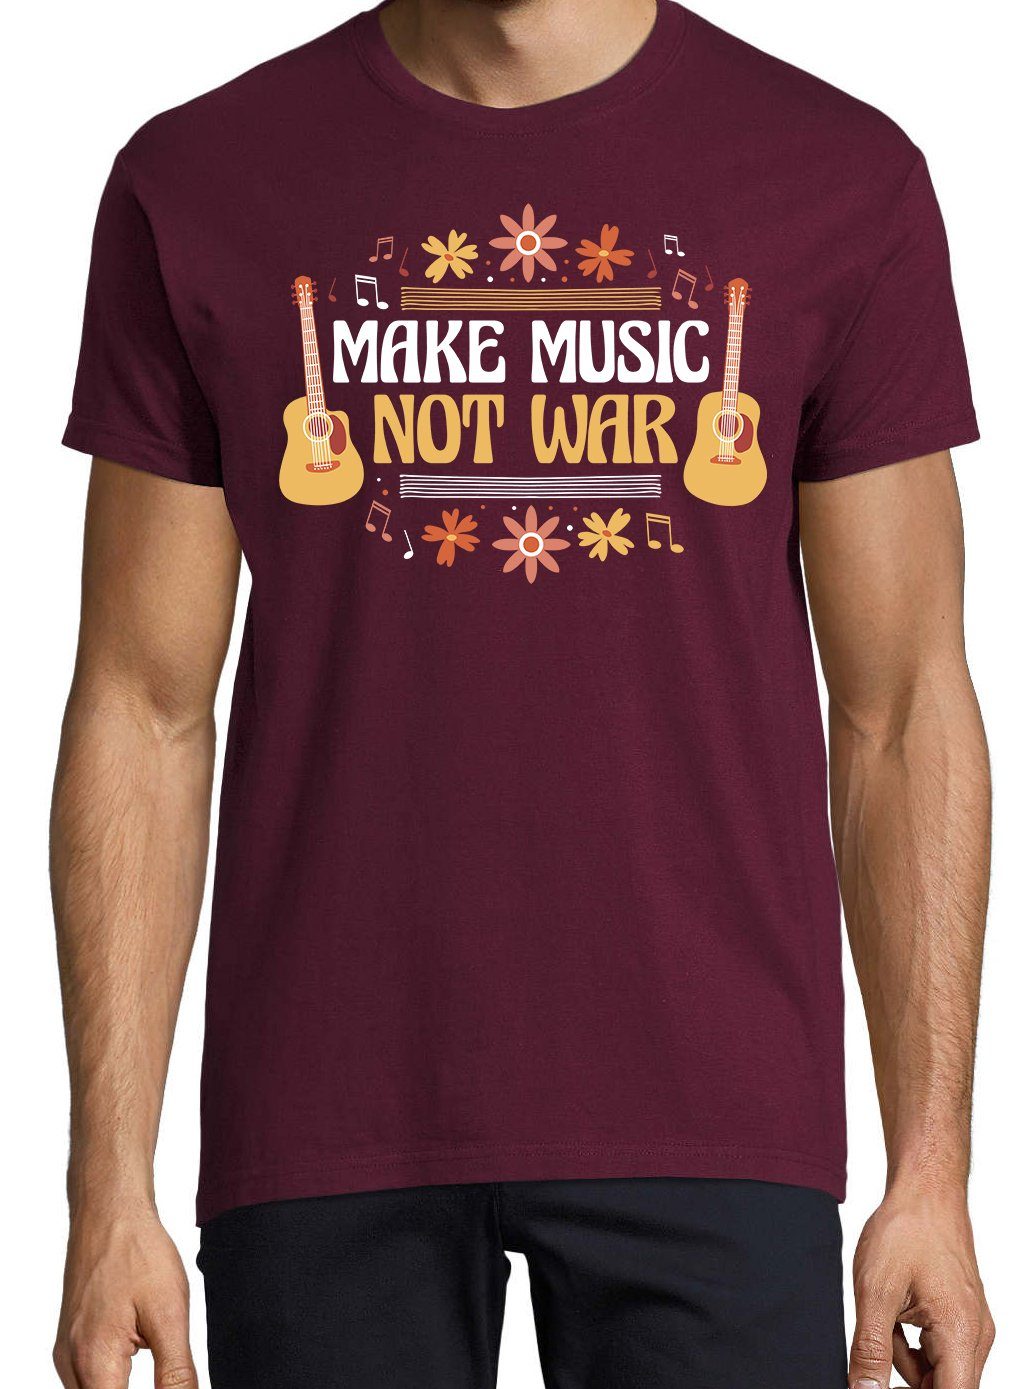 Not "Make Spruch T-Shirt War" Designz T-Shirt Herren Youth Burgund mit Music lustigem